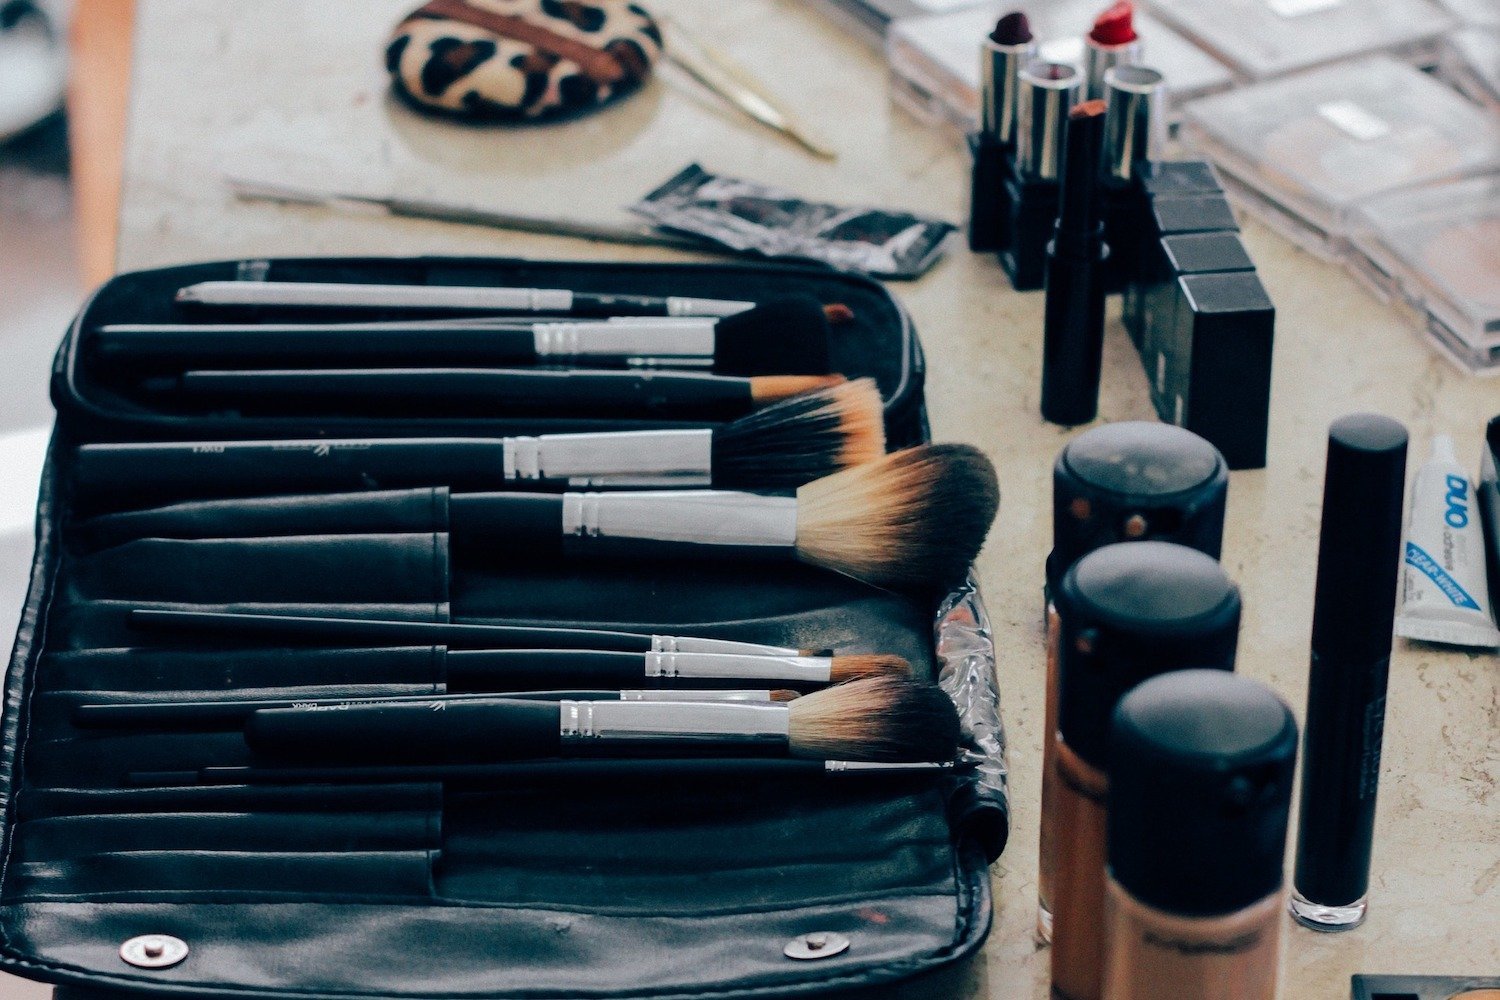 Makeup brushes in a makeup bag